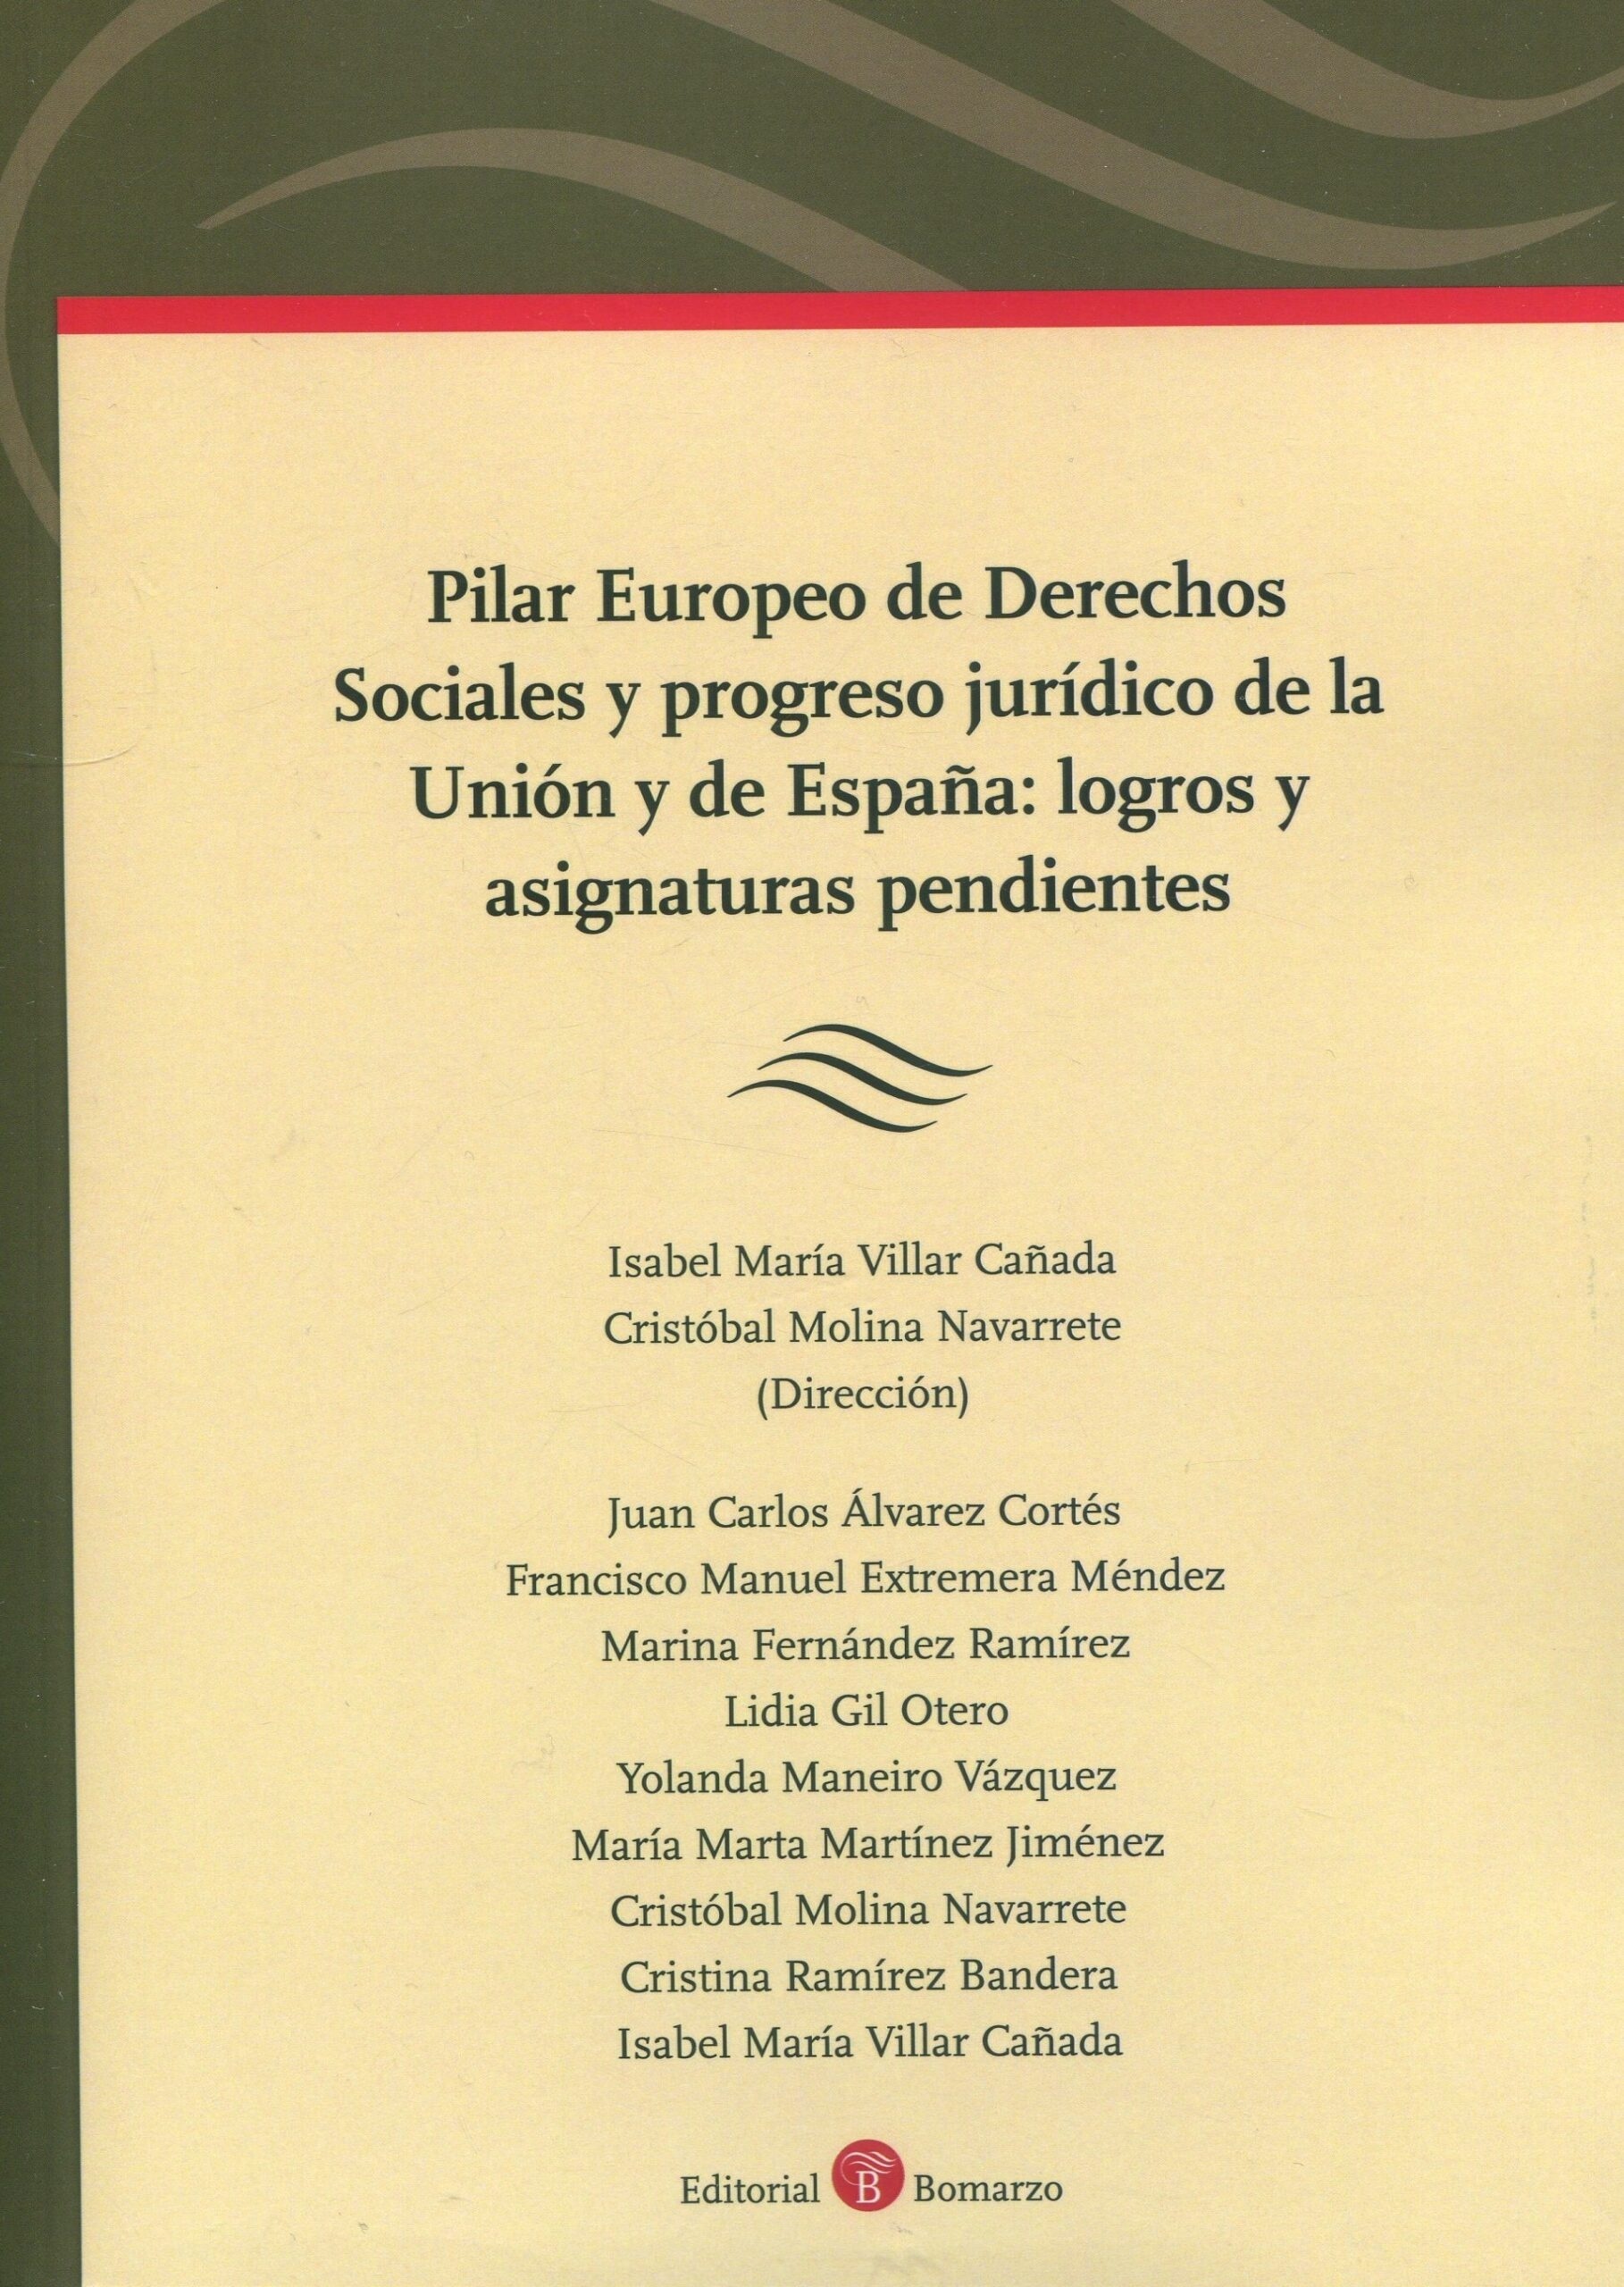 Pilar europeo de Derechos Sociales y progreso jurídico de la Unión y de España: "logros y asignaturas pendientes"